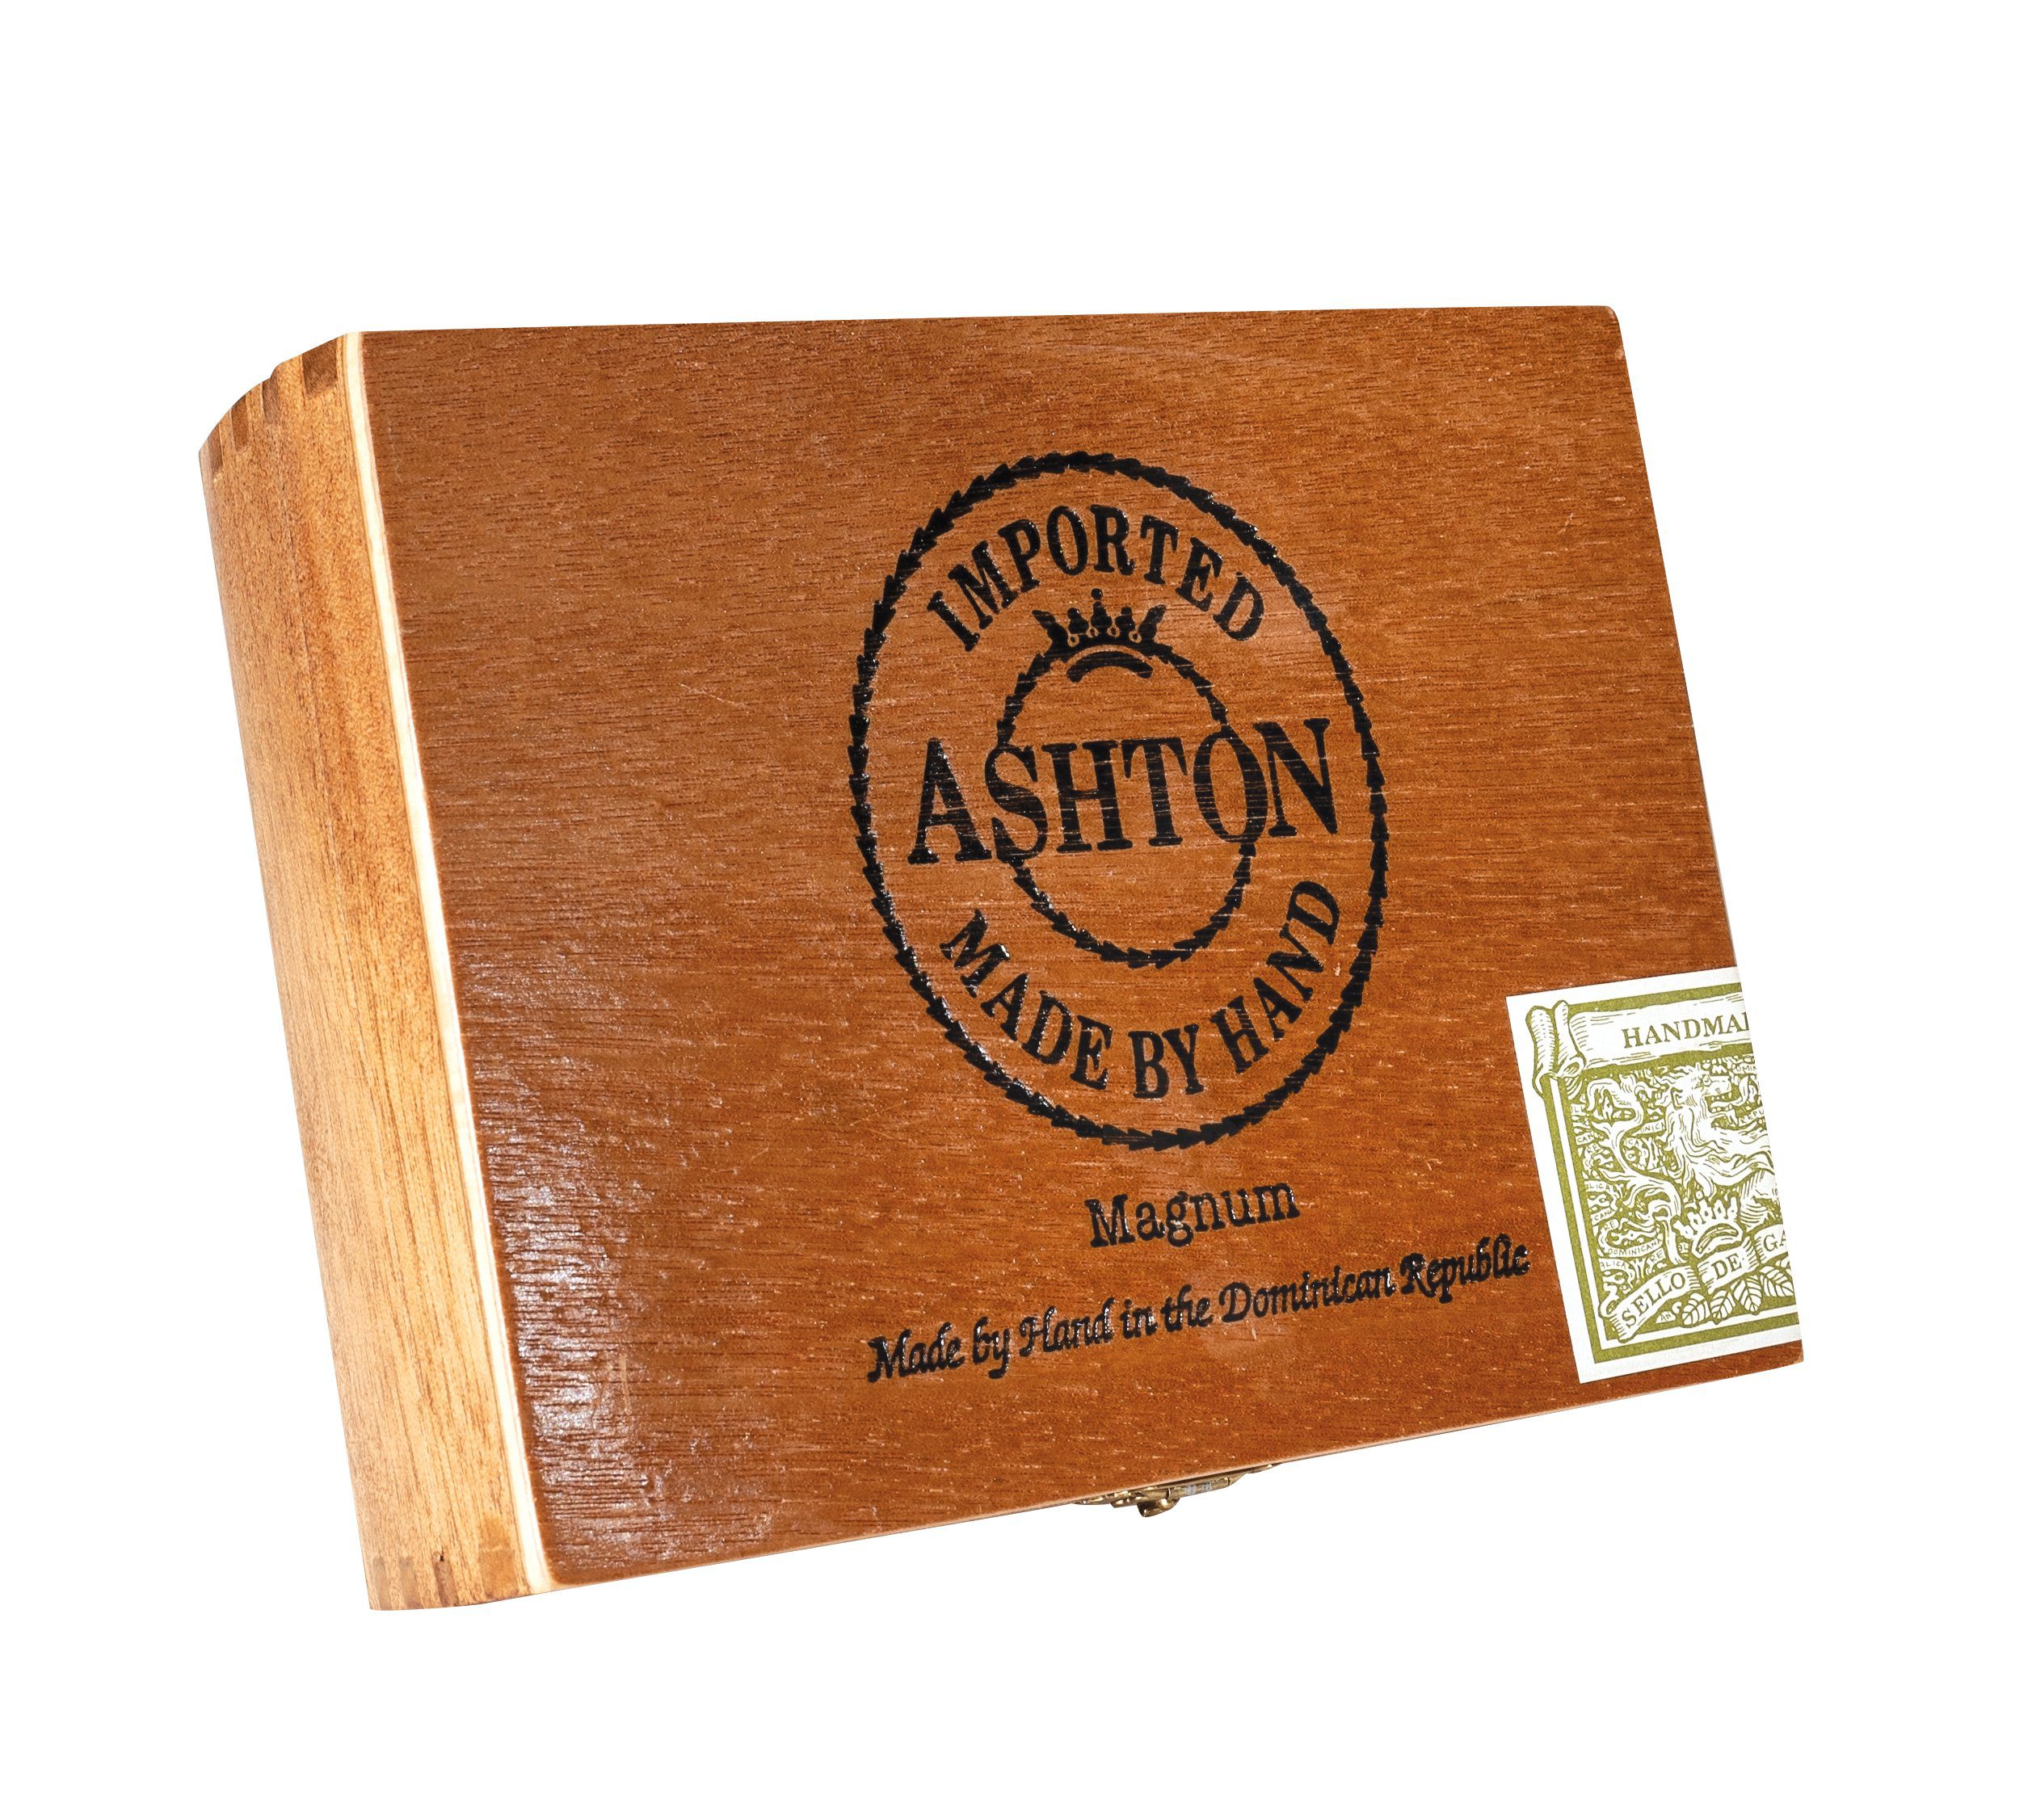 Closed box of 25 count Ashton Magnum cigars